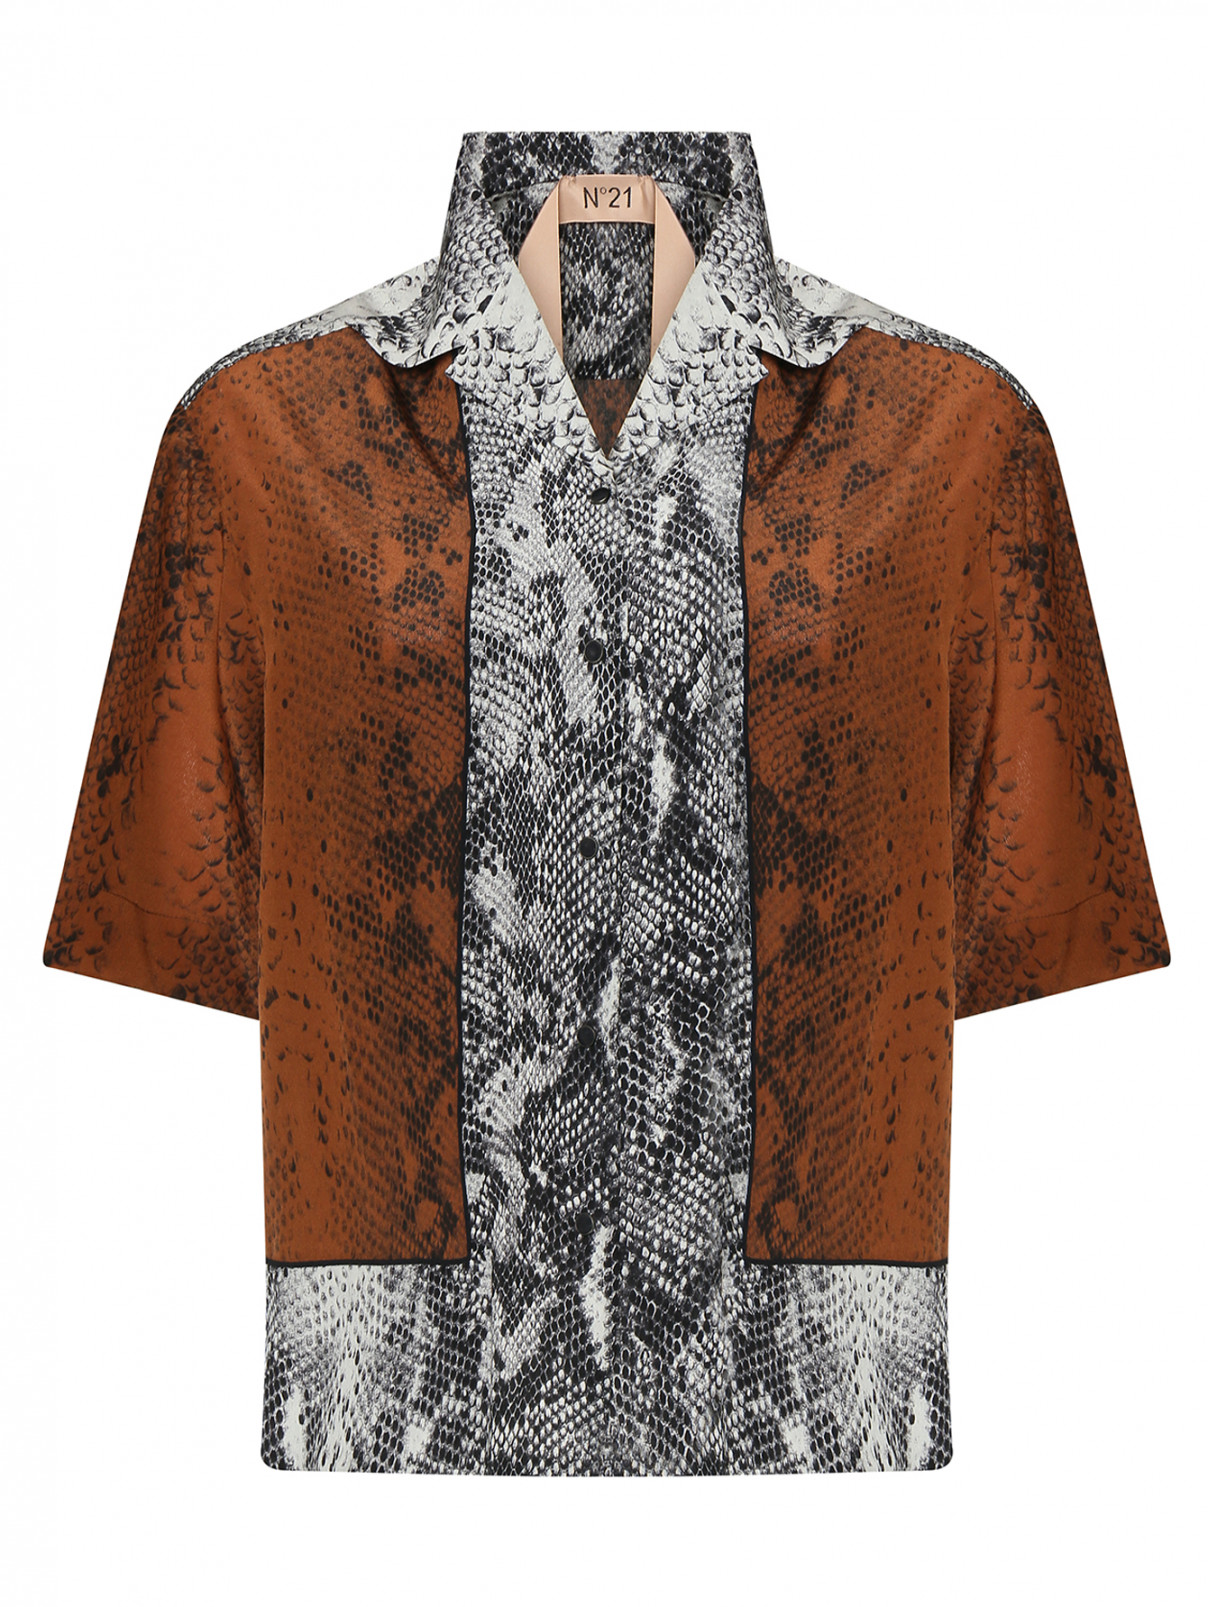 Блуза шелковая с животным узором N21  –  Общий вид  – Цвет:  Коричневый